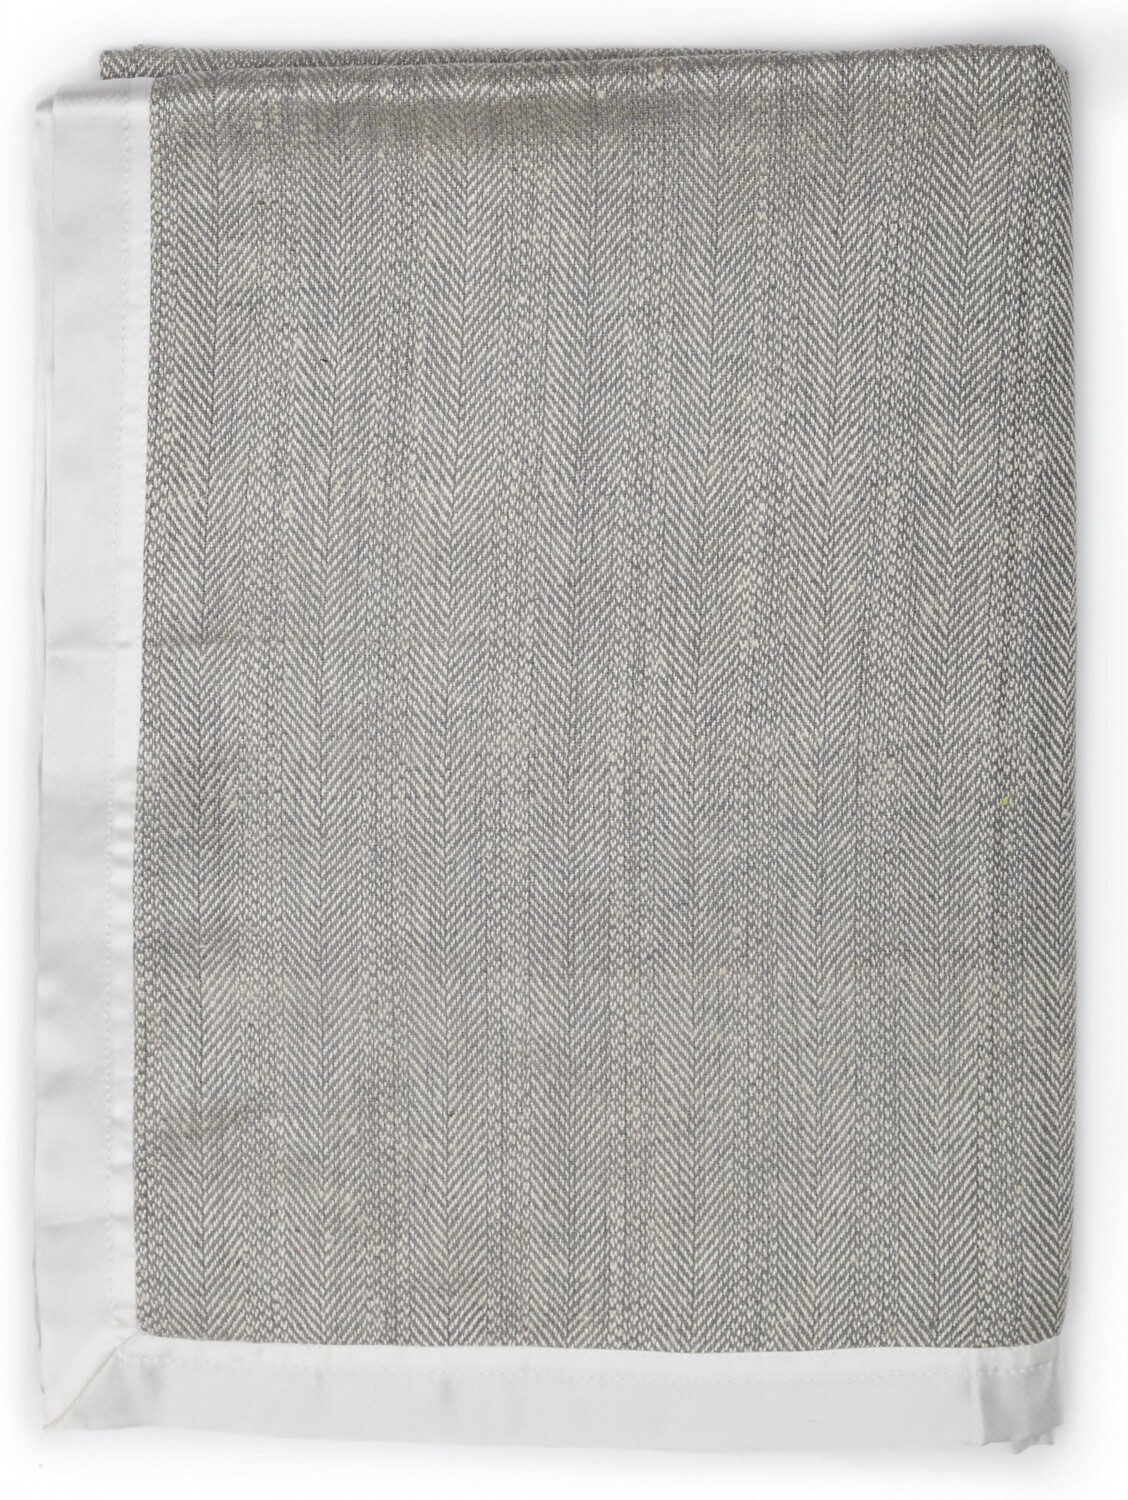 Плед Herringbone цвет: серый (125х175 см), размер Без наволочек gin853856 Плед Herringbone цвет: серый (125х175 см) - фото 1